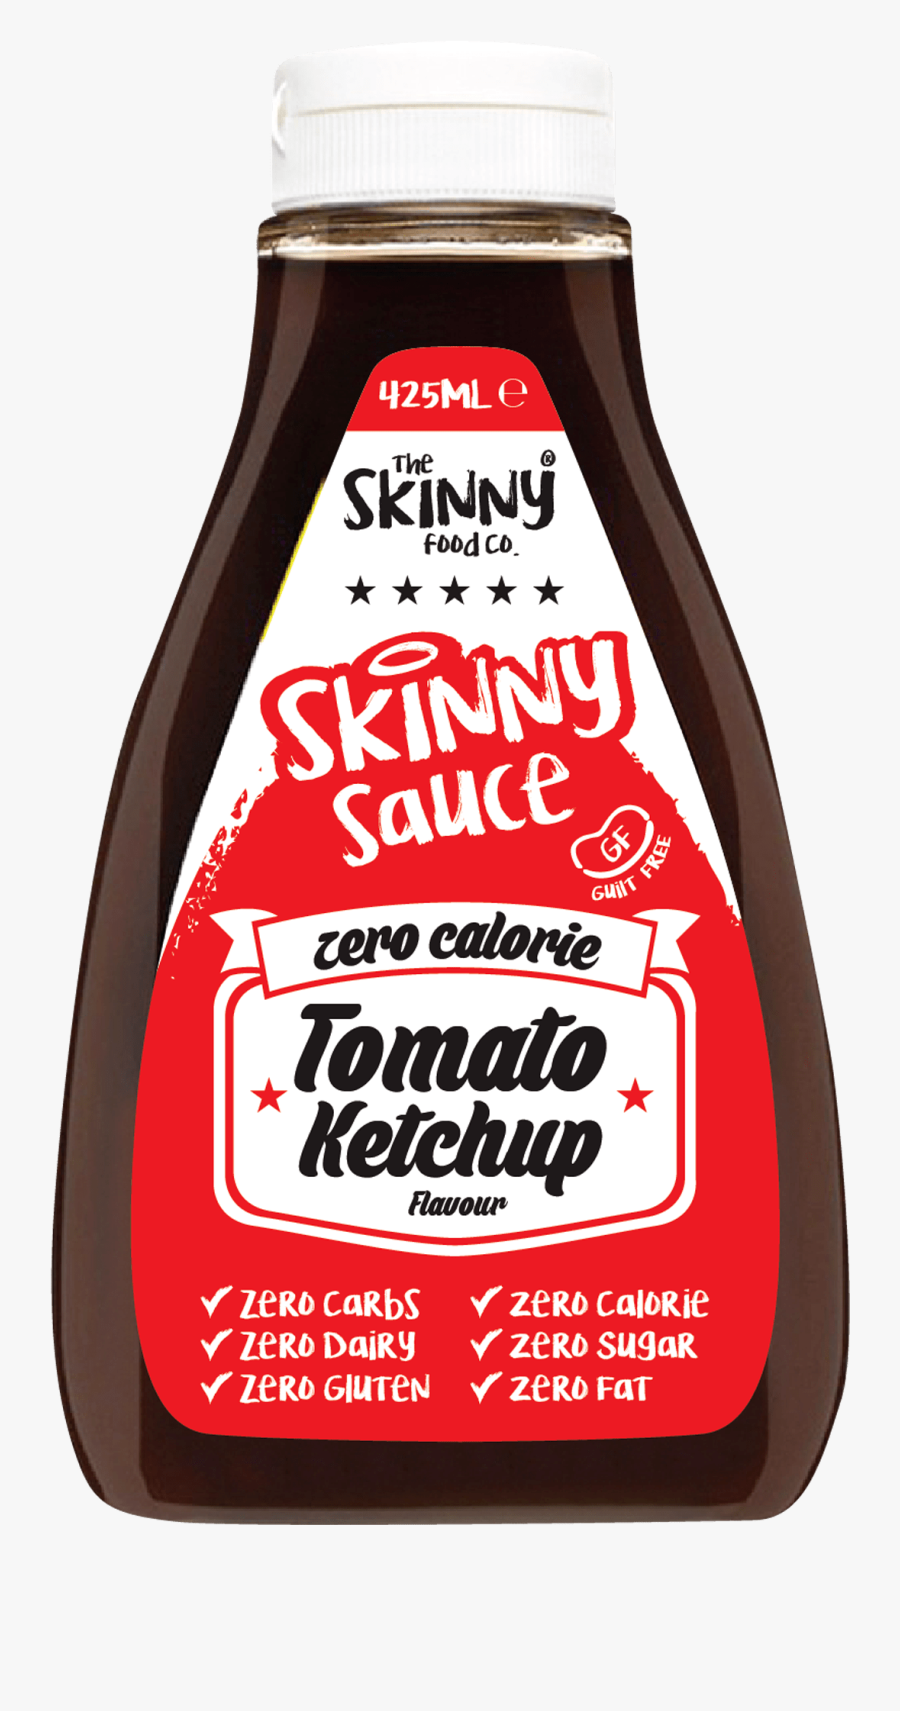 Transparent Ketchup Bottle Png - Drink, Transparent Clipart